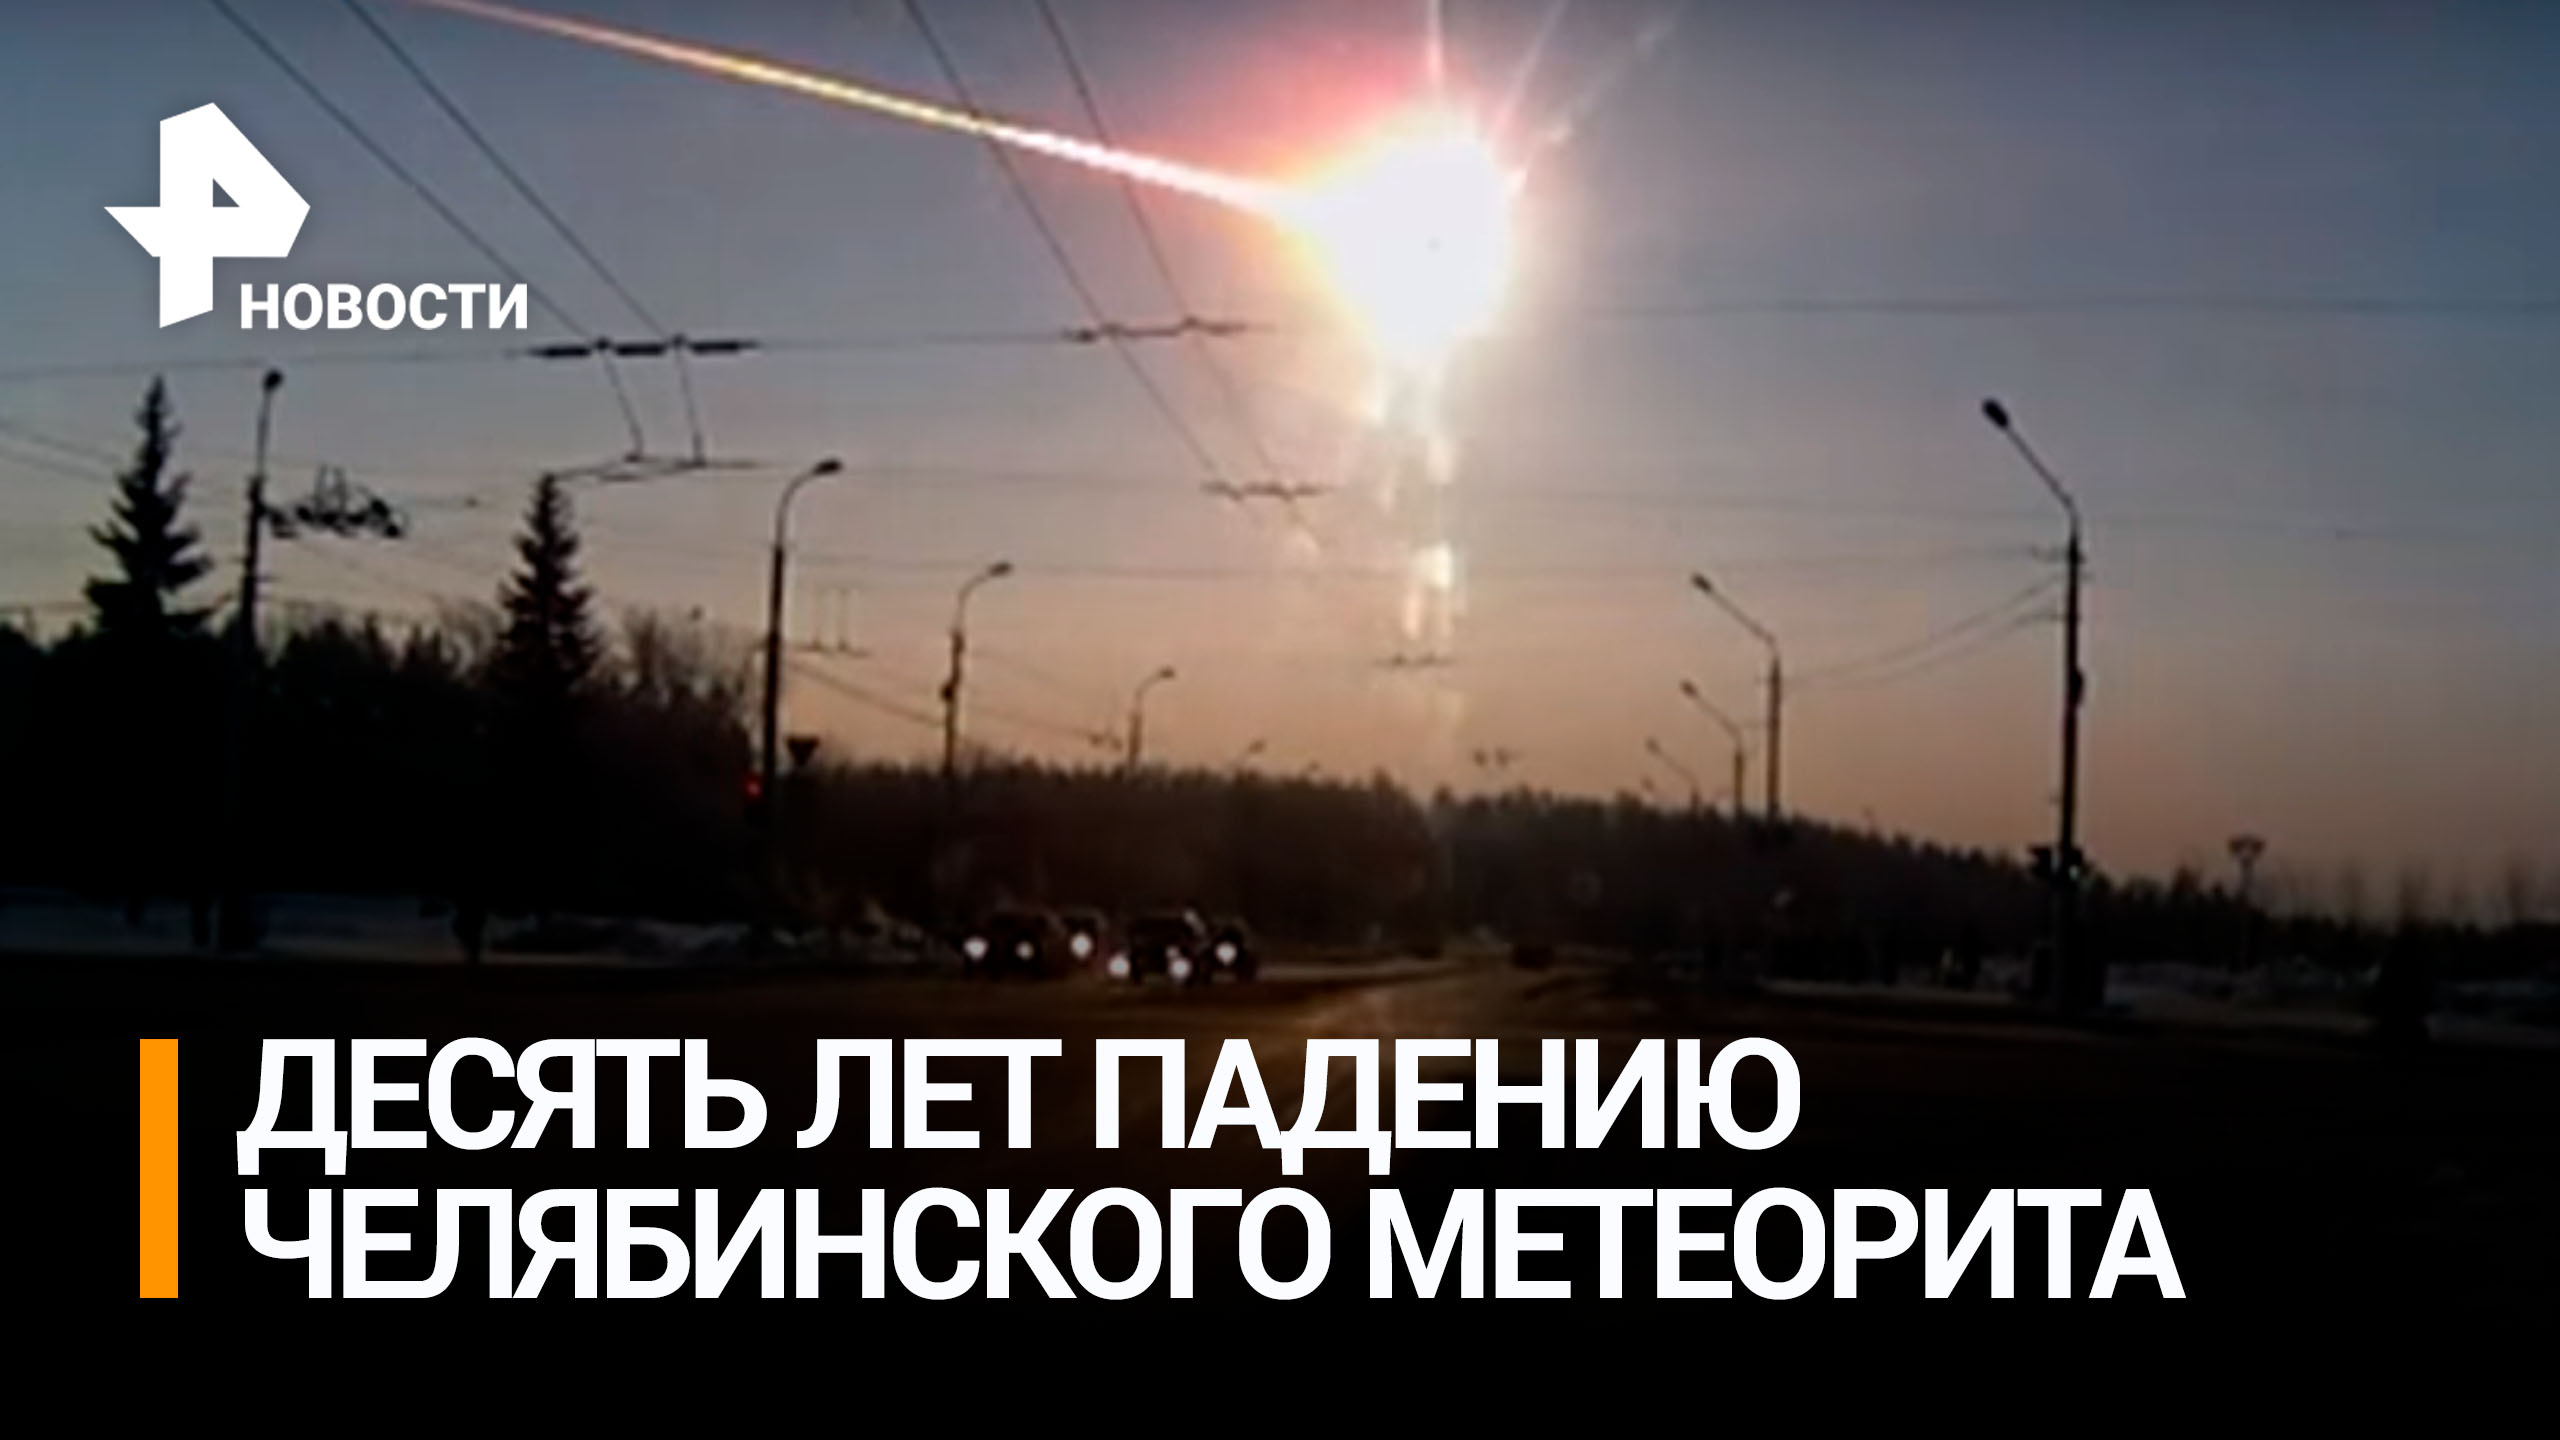 У Челябинского метеорита обнаружили необычные свойства / РЕН Новости